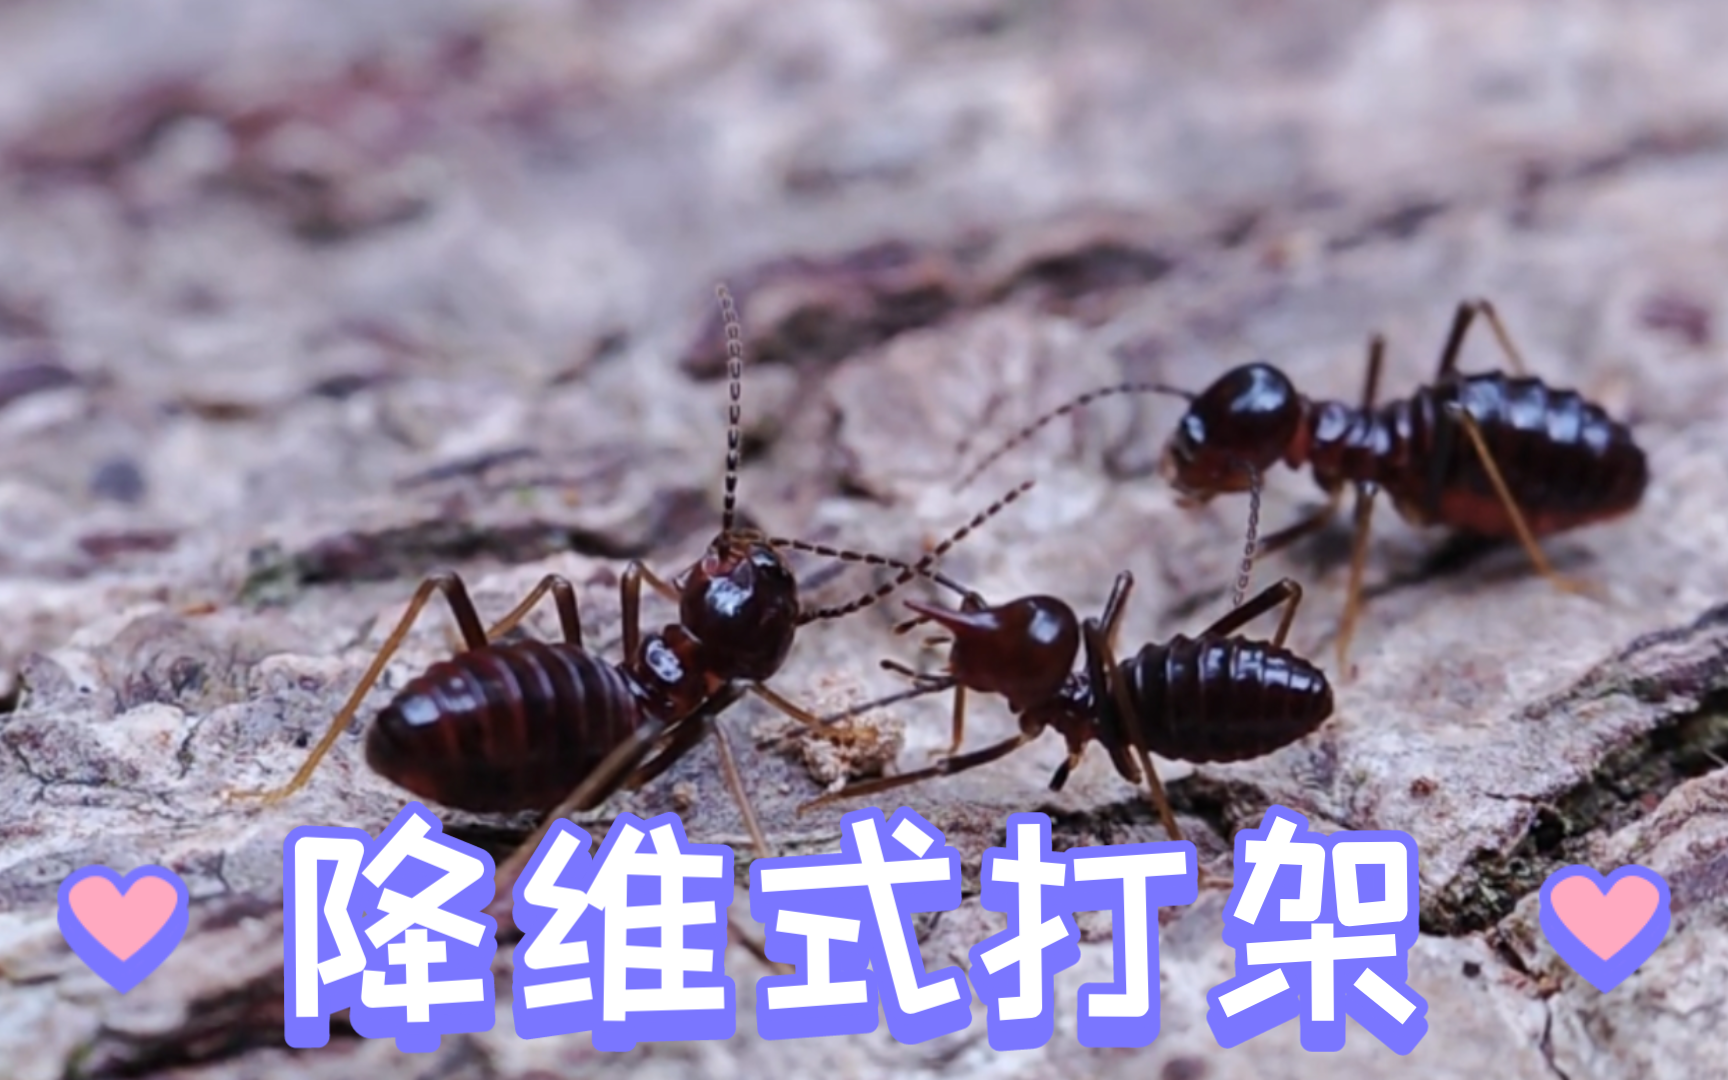 拥有降维式打击的象白蚁中的须白蚁在我们人类面前却非常的脆弱